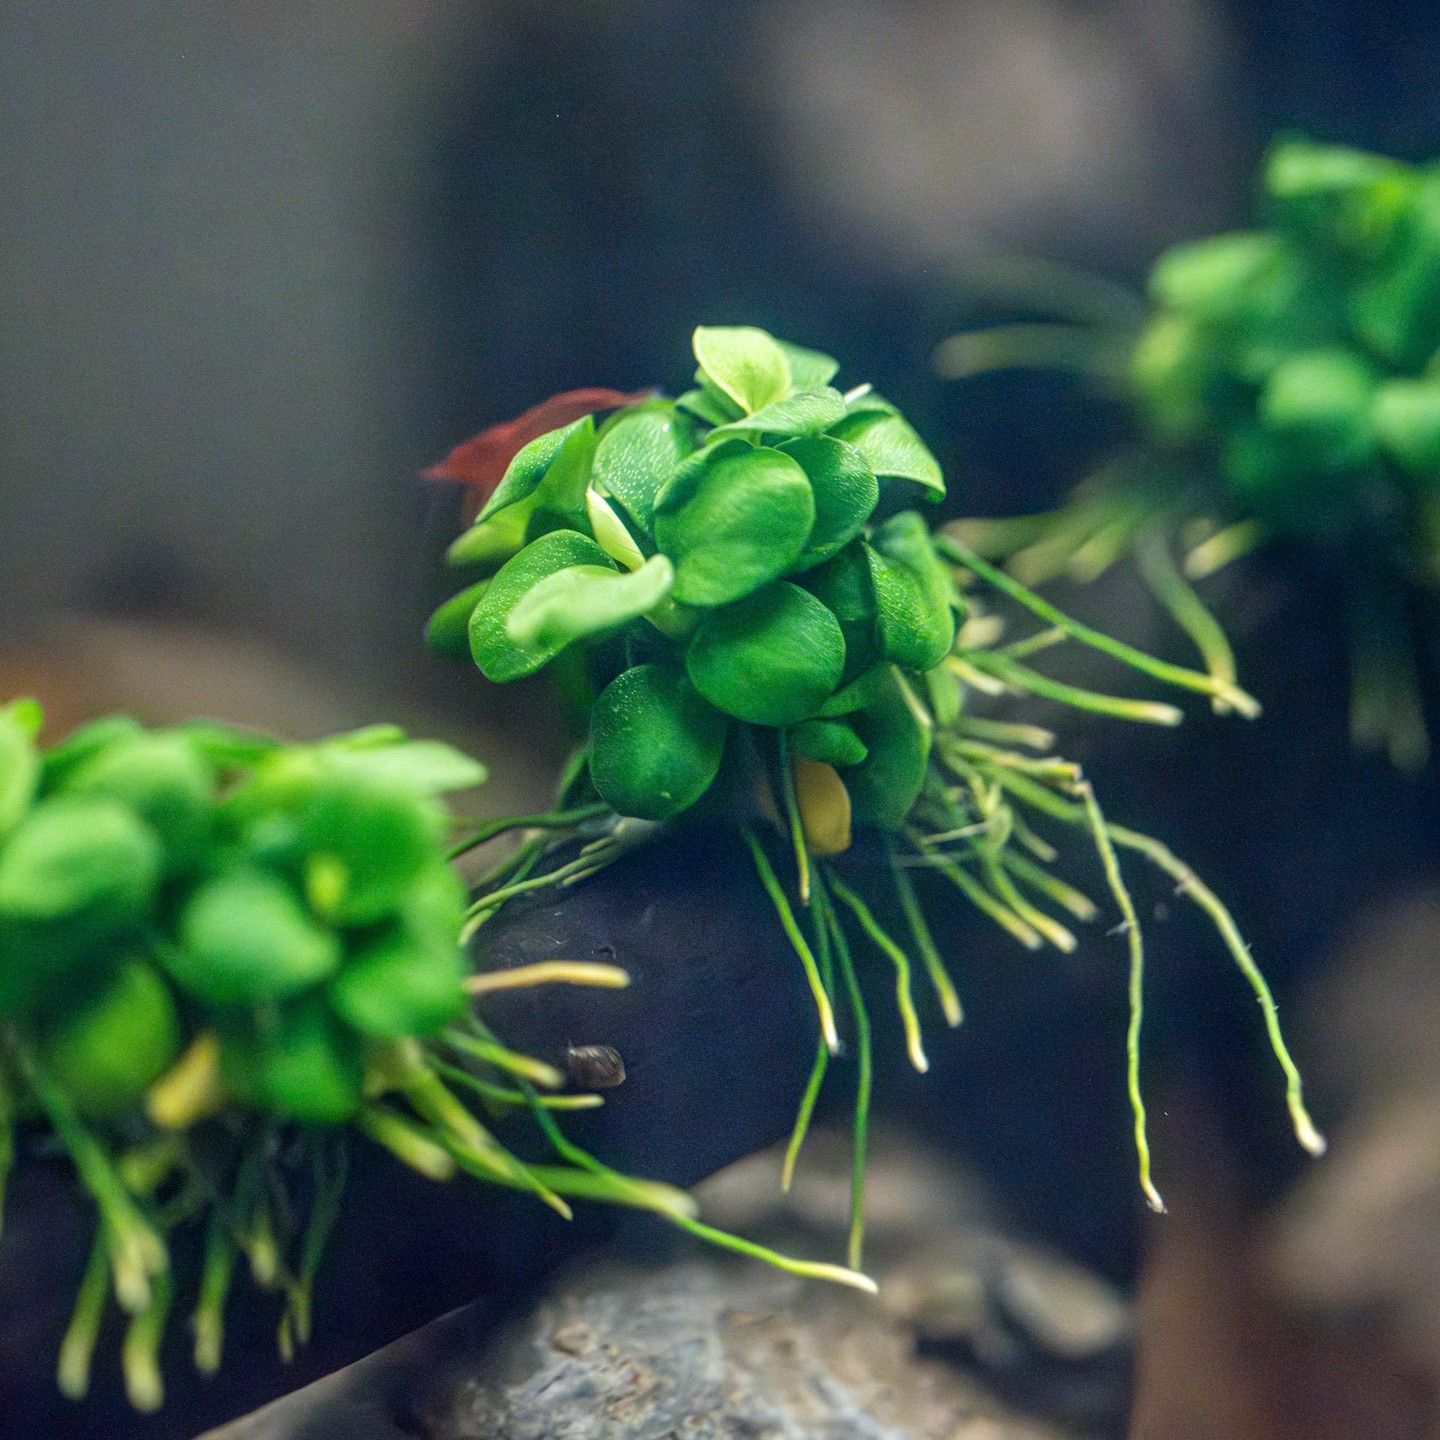 New aquarium plants - Anubias barteri 'Mini Coin'